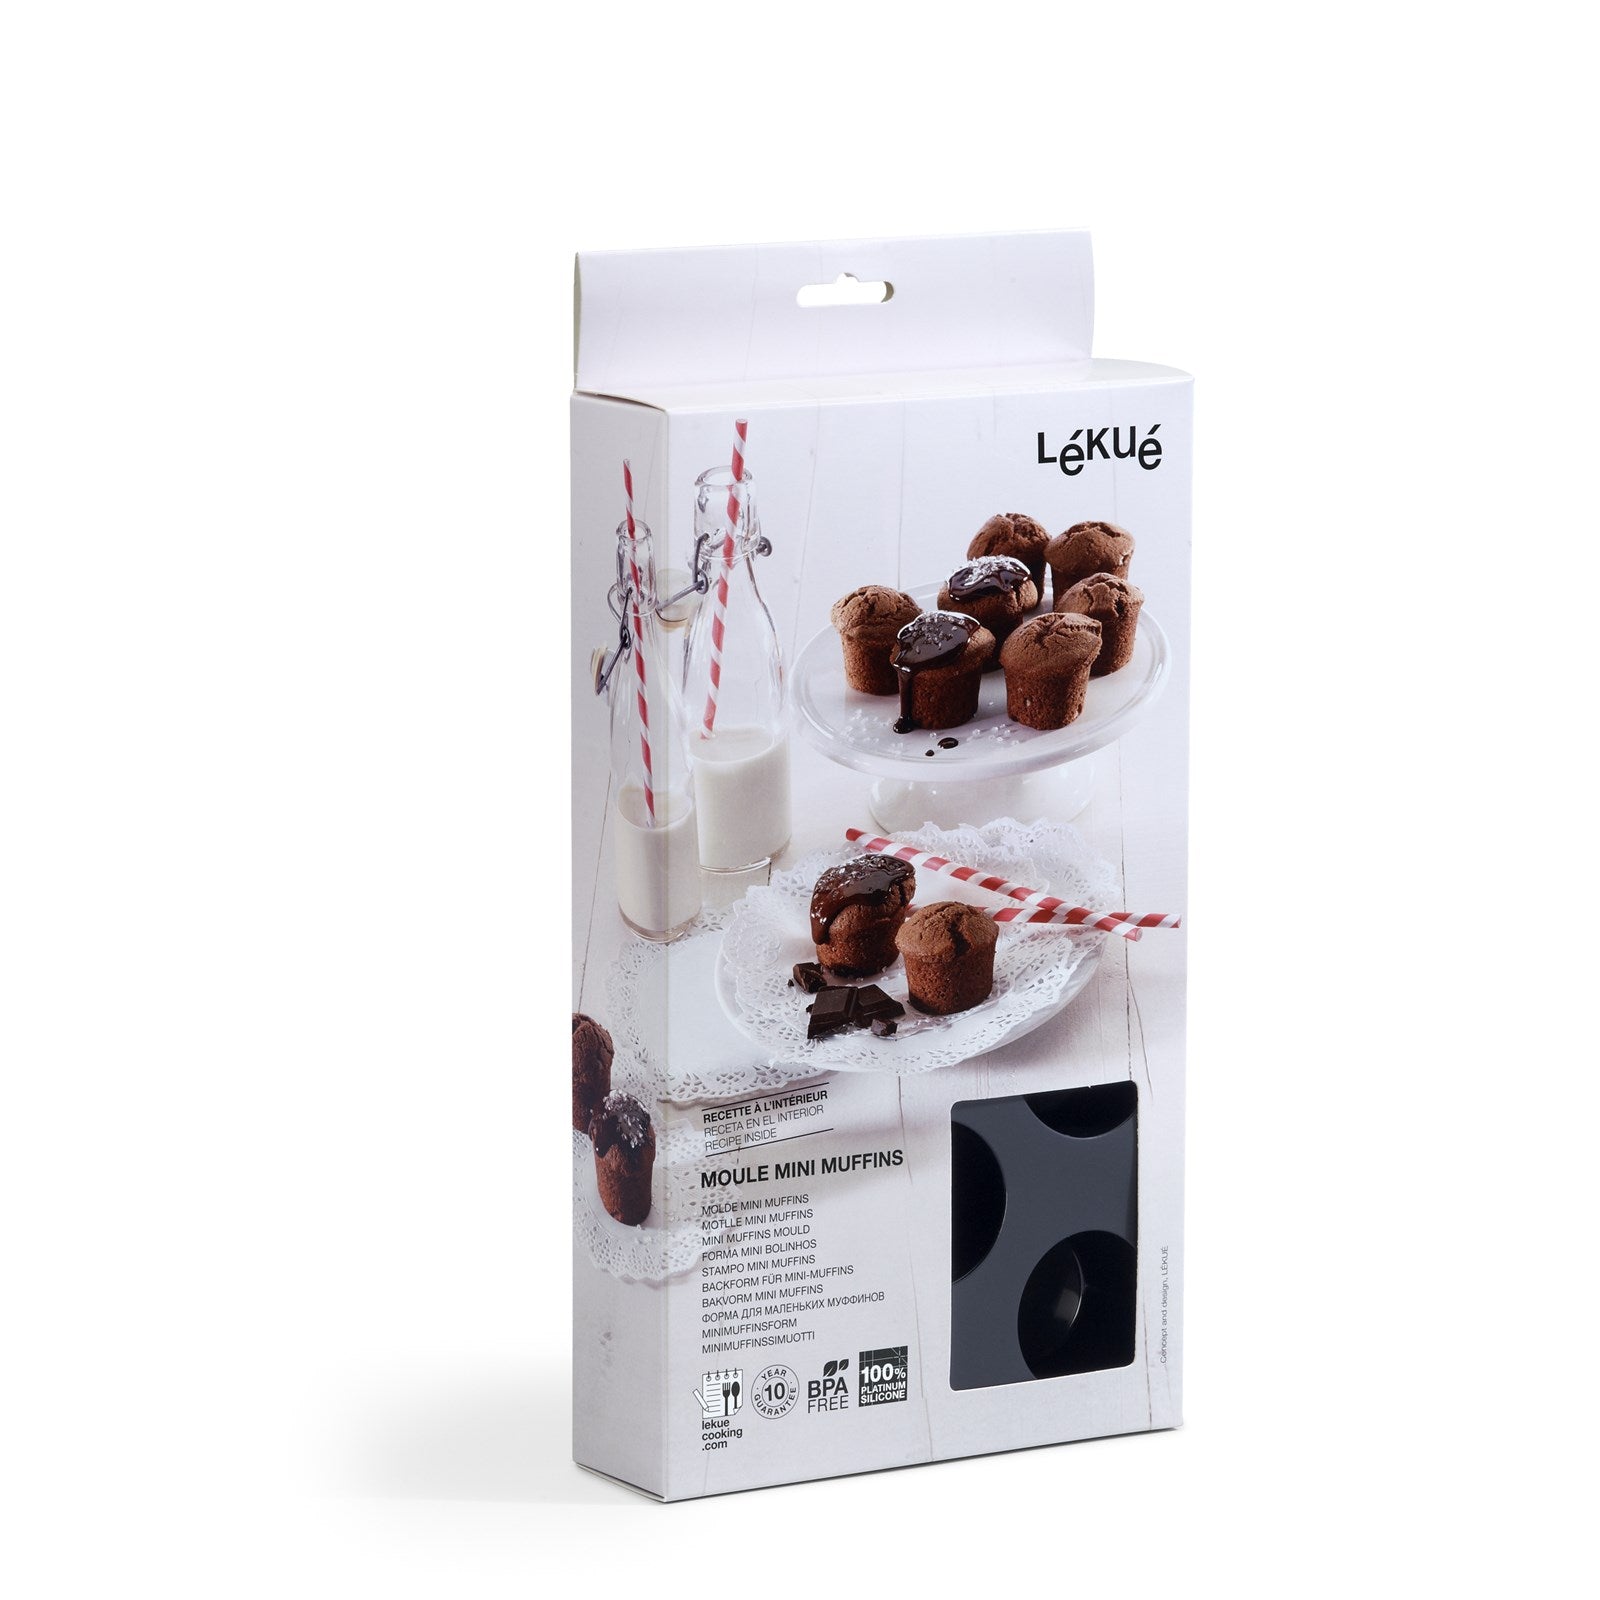 Backform 11er Muffin schwarz, Ø5 h: 3 cm in Schwarz präsentiert im Onlineshop von KAQTU Design AG. Backen ist von Lékué